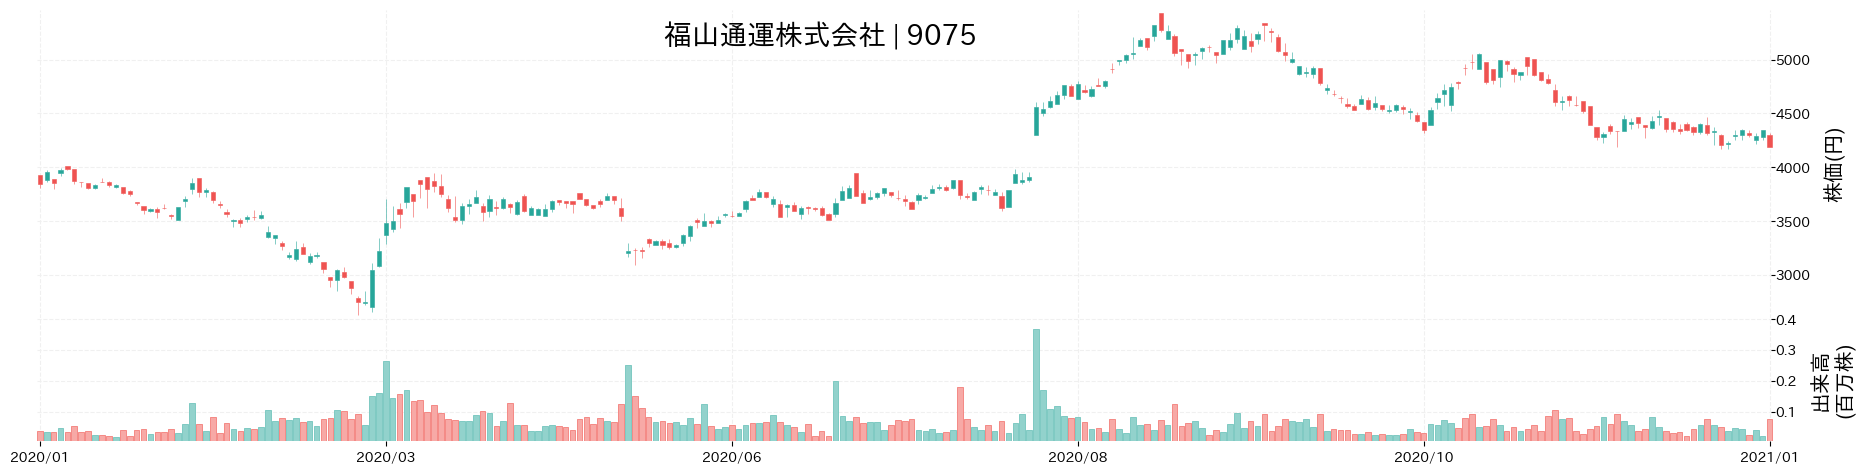 福山通運の株価推移(2020)